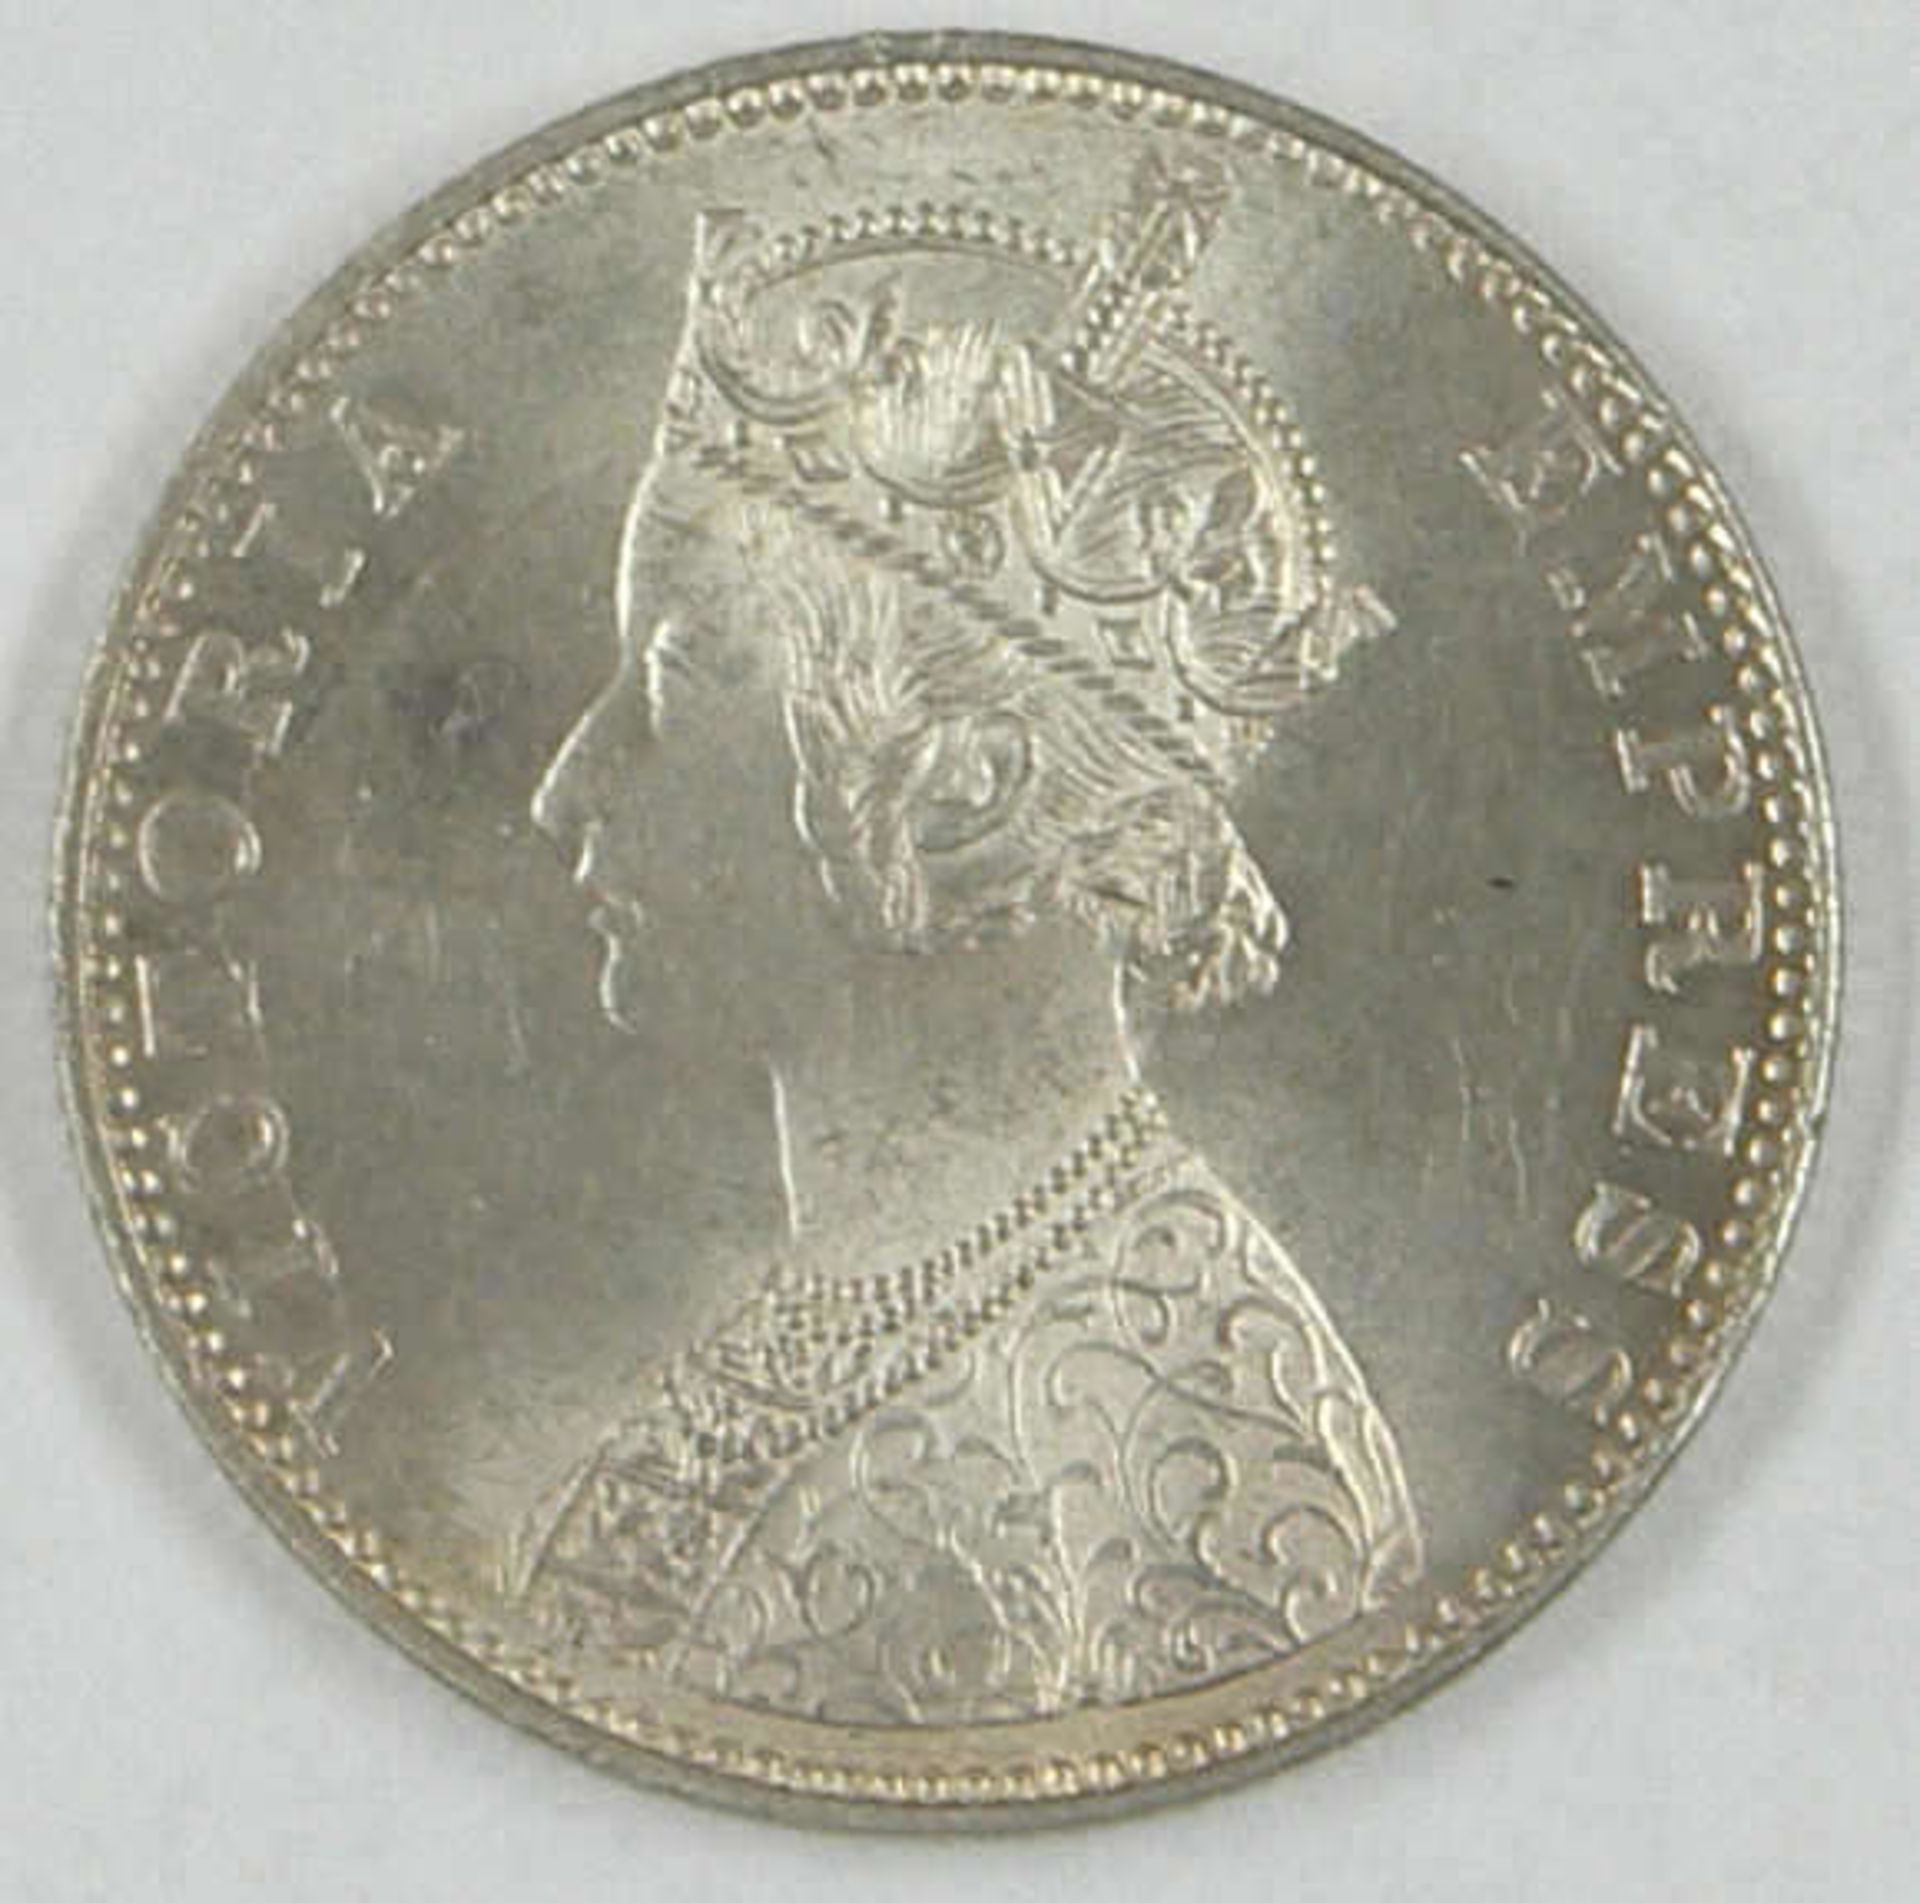 Britisch-Indien Silbermünze "One Rupee 1893", Erhaltung: vorzüglichBritish India silver coin "One